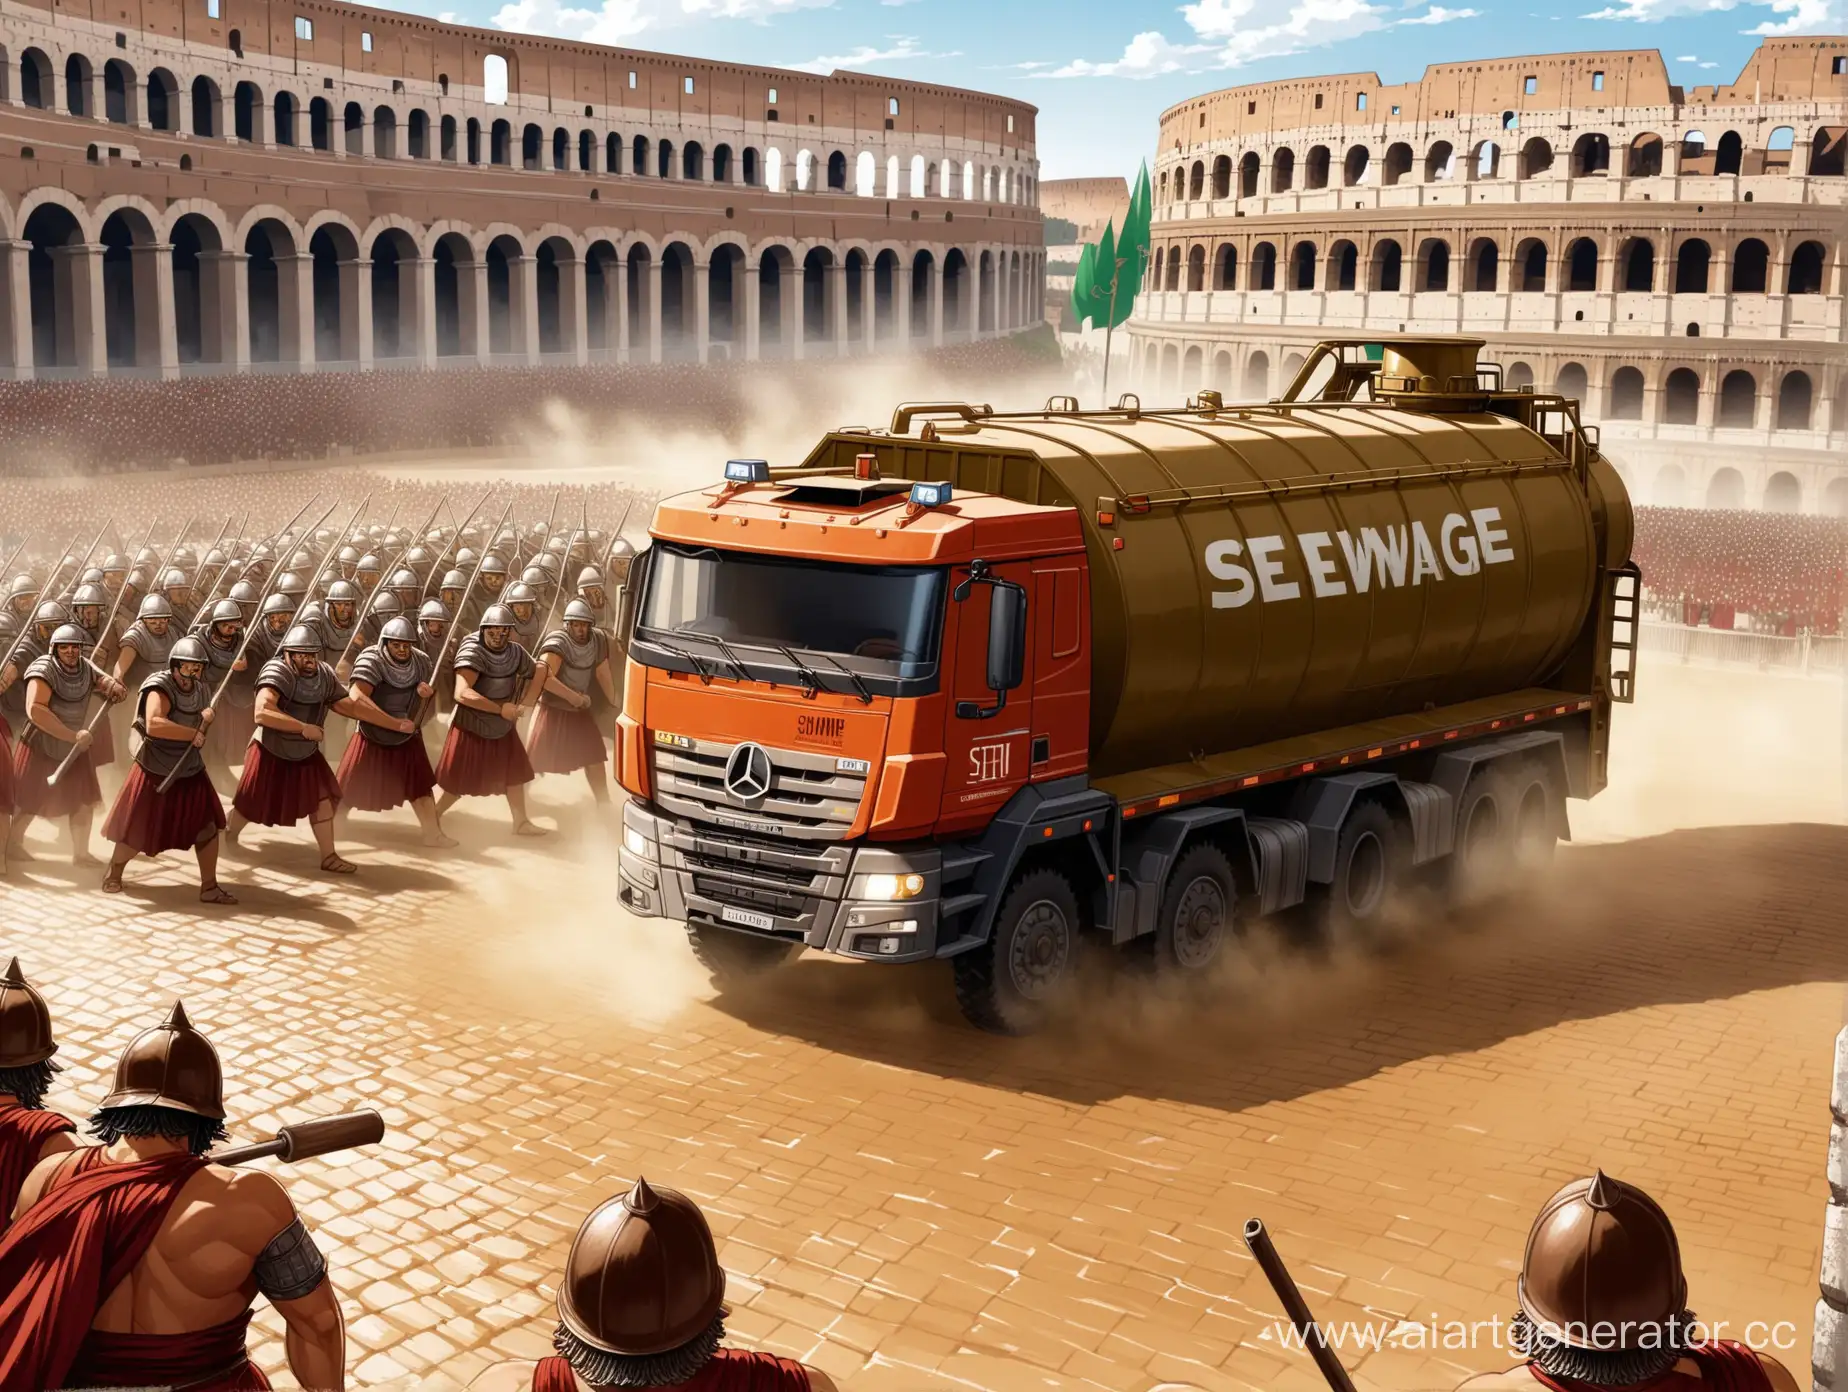 Ассенизаторная машина участвует в битве за рим